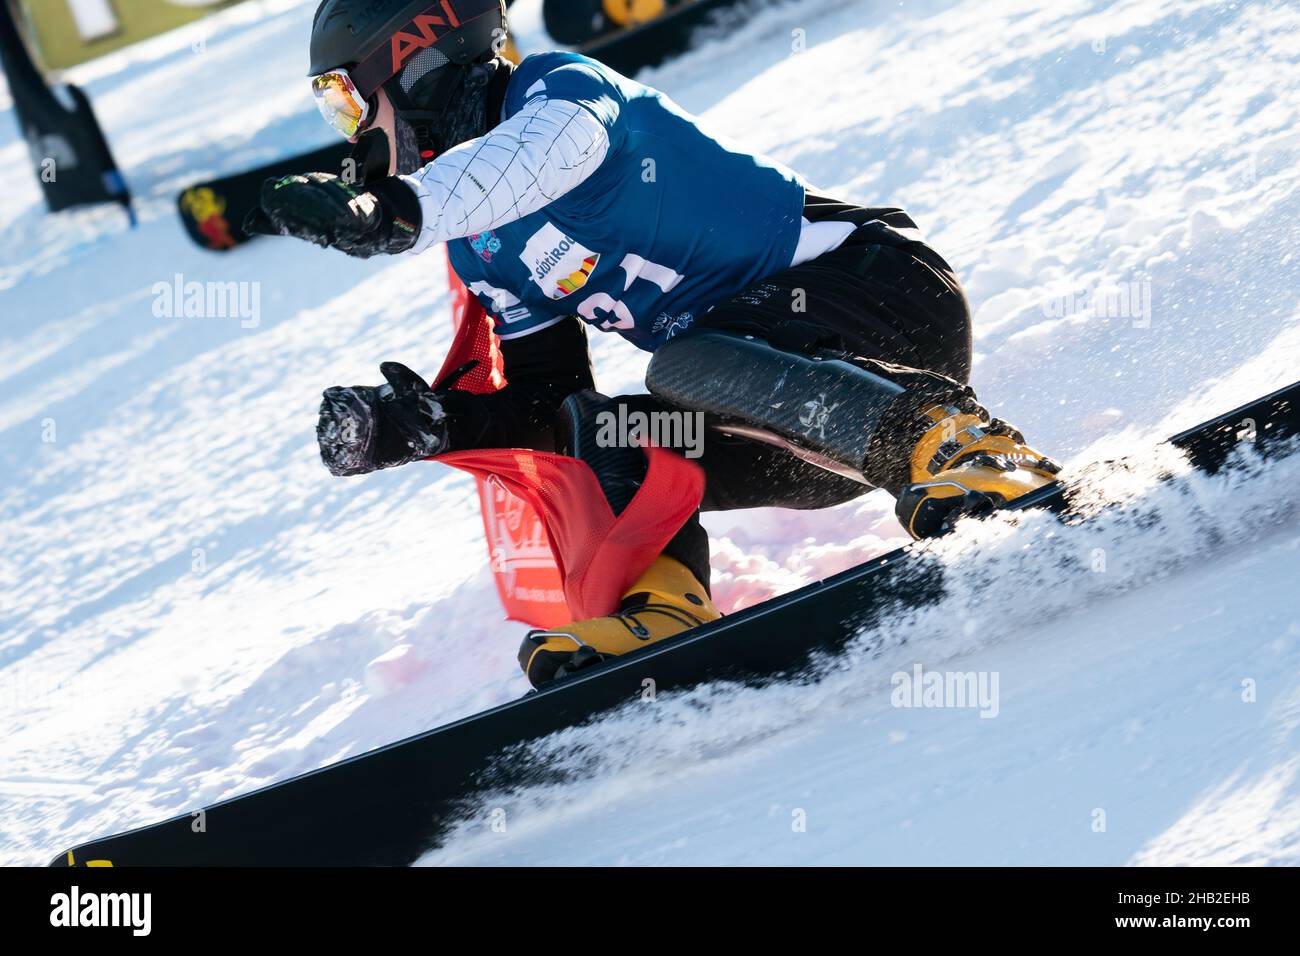 LOGINOV Dmitrii (RUS) competing in the Fis Snowboard World Cup 2022 Men's  Parallel Giant Slalom on the Pra Di Tori (Carezza) Course in the dolomite  mountain range. Credit: MAURO DALLA POZZA/Alamy Live